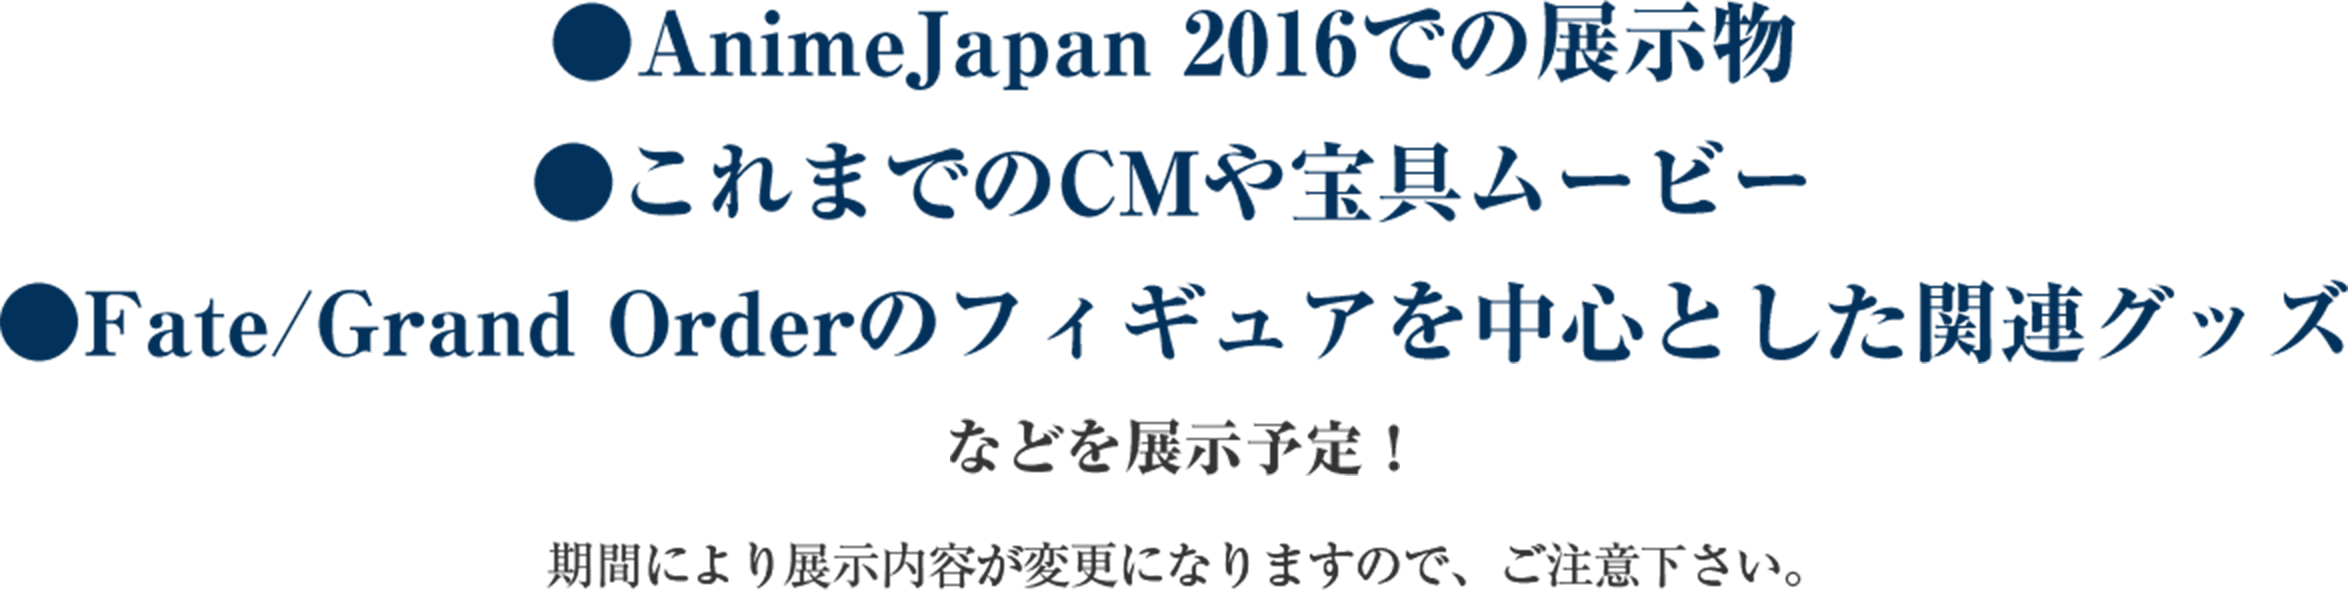 AnimeJapan 2016での展示物、これまでのCMや宝具ムービー、Fate/Grand Orderのフィギュアを中心とした関連グッズ などを展示予定！